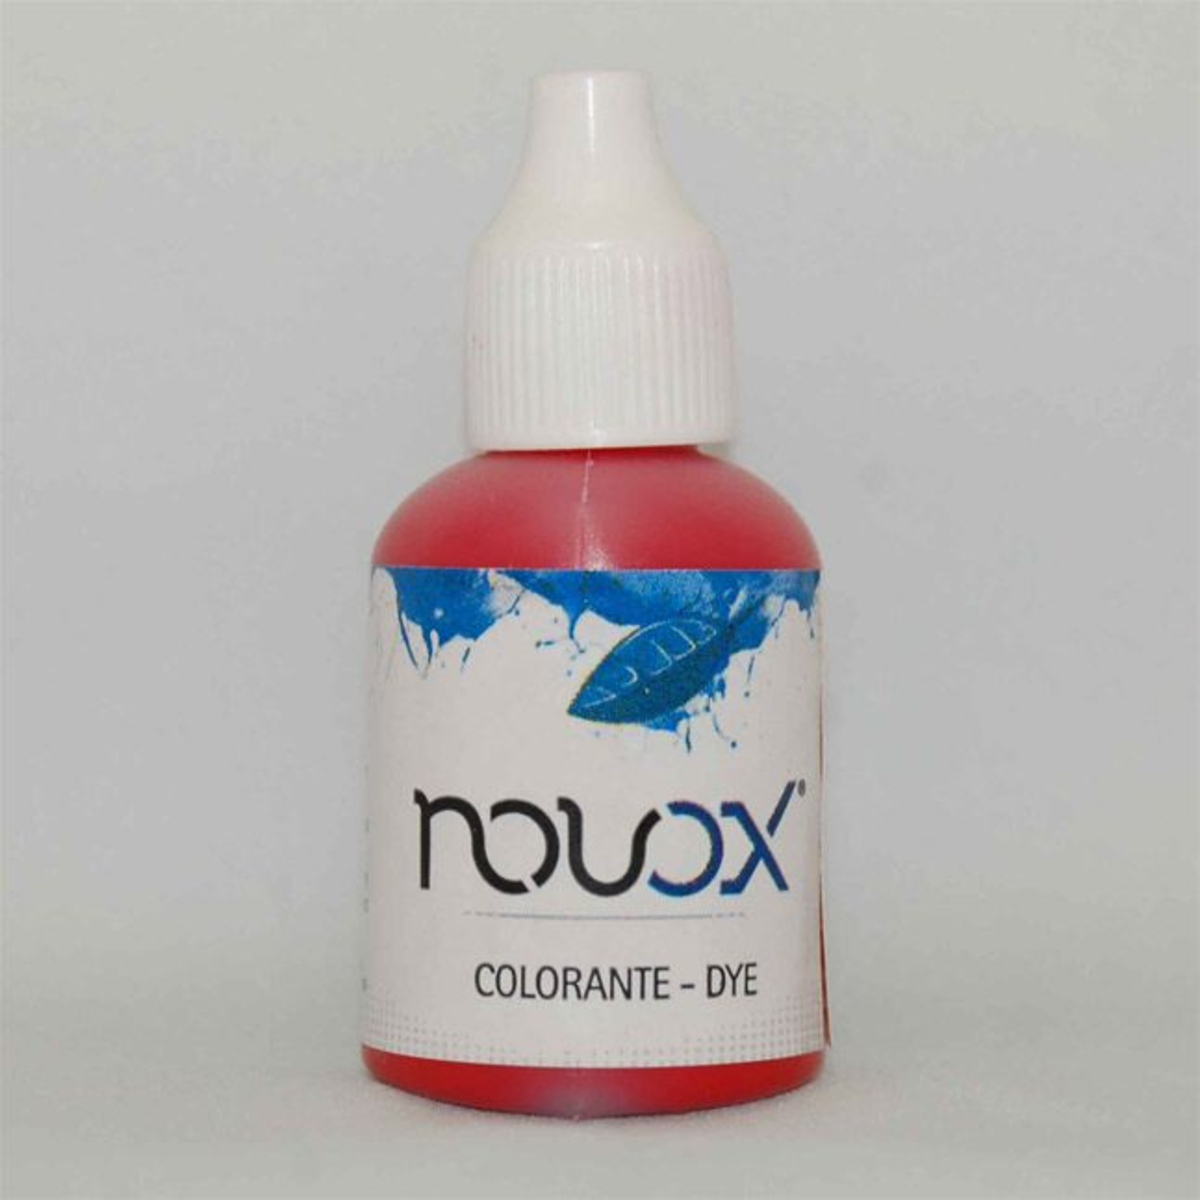 Red Dye for Novox